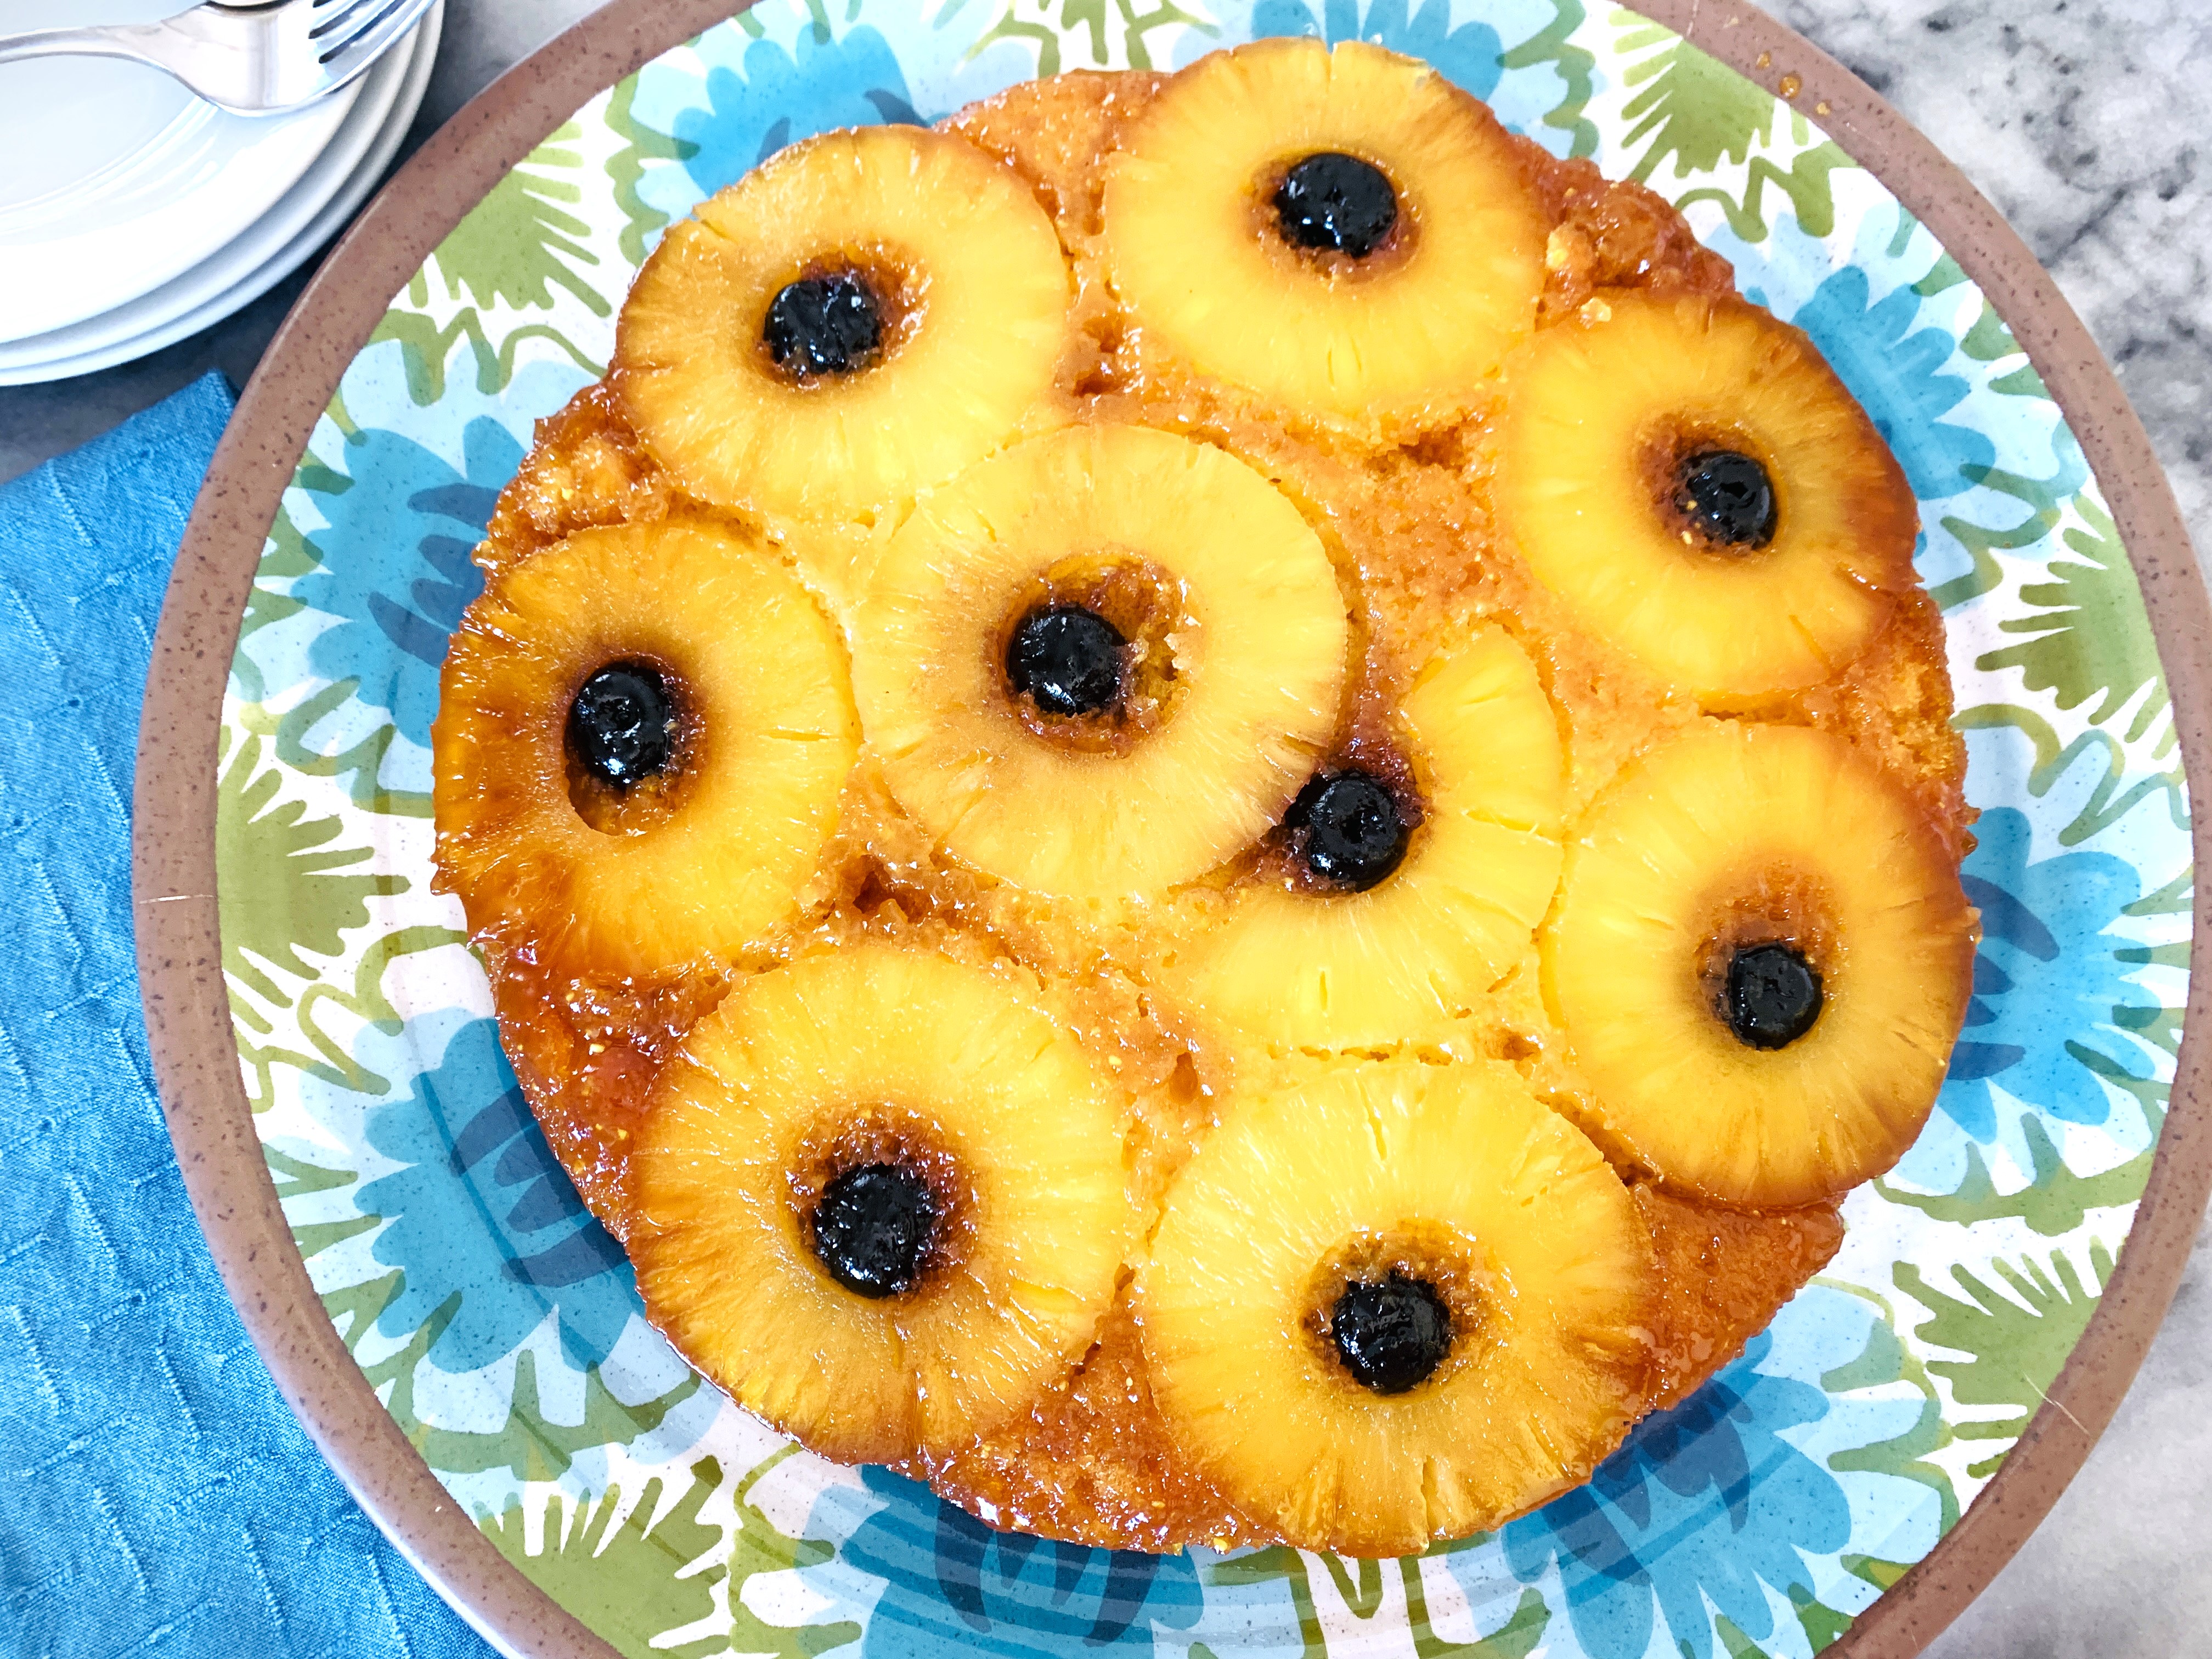 https://genabell.com/wp-content/uploads/2022/07/07-22-Honey-Pineapple-Upside-Down-Cake-004.jpg